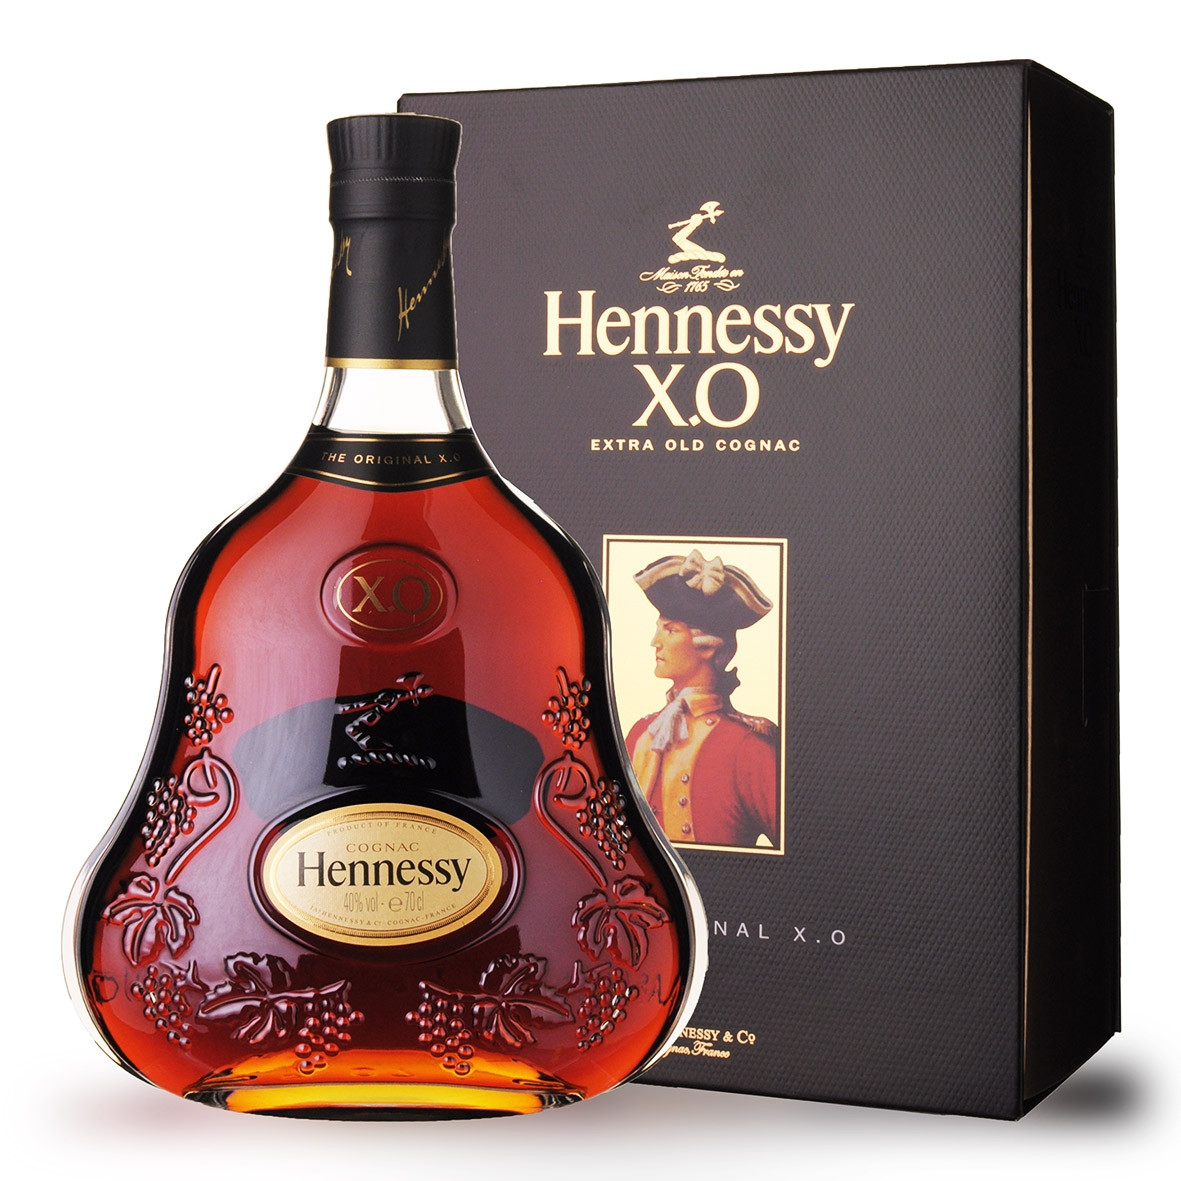 Achat de Cognac Hennessy XO 70cl vendu en Coffret sur notre site